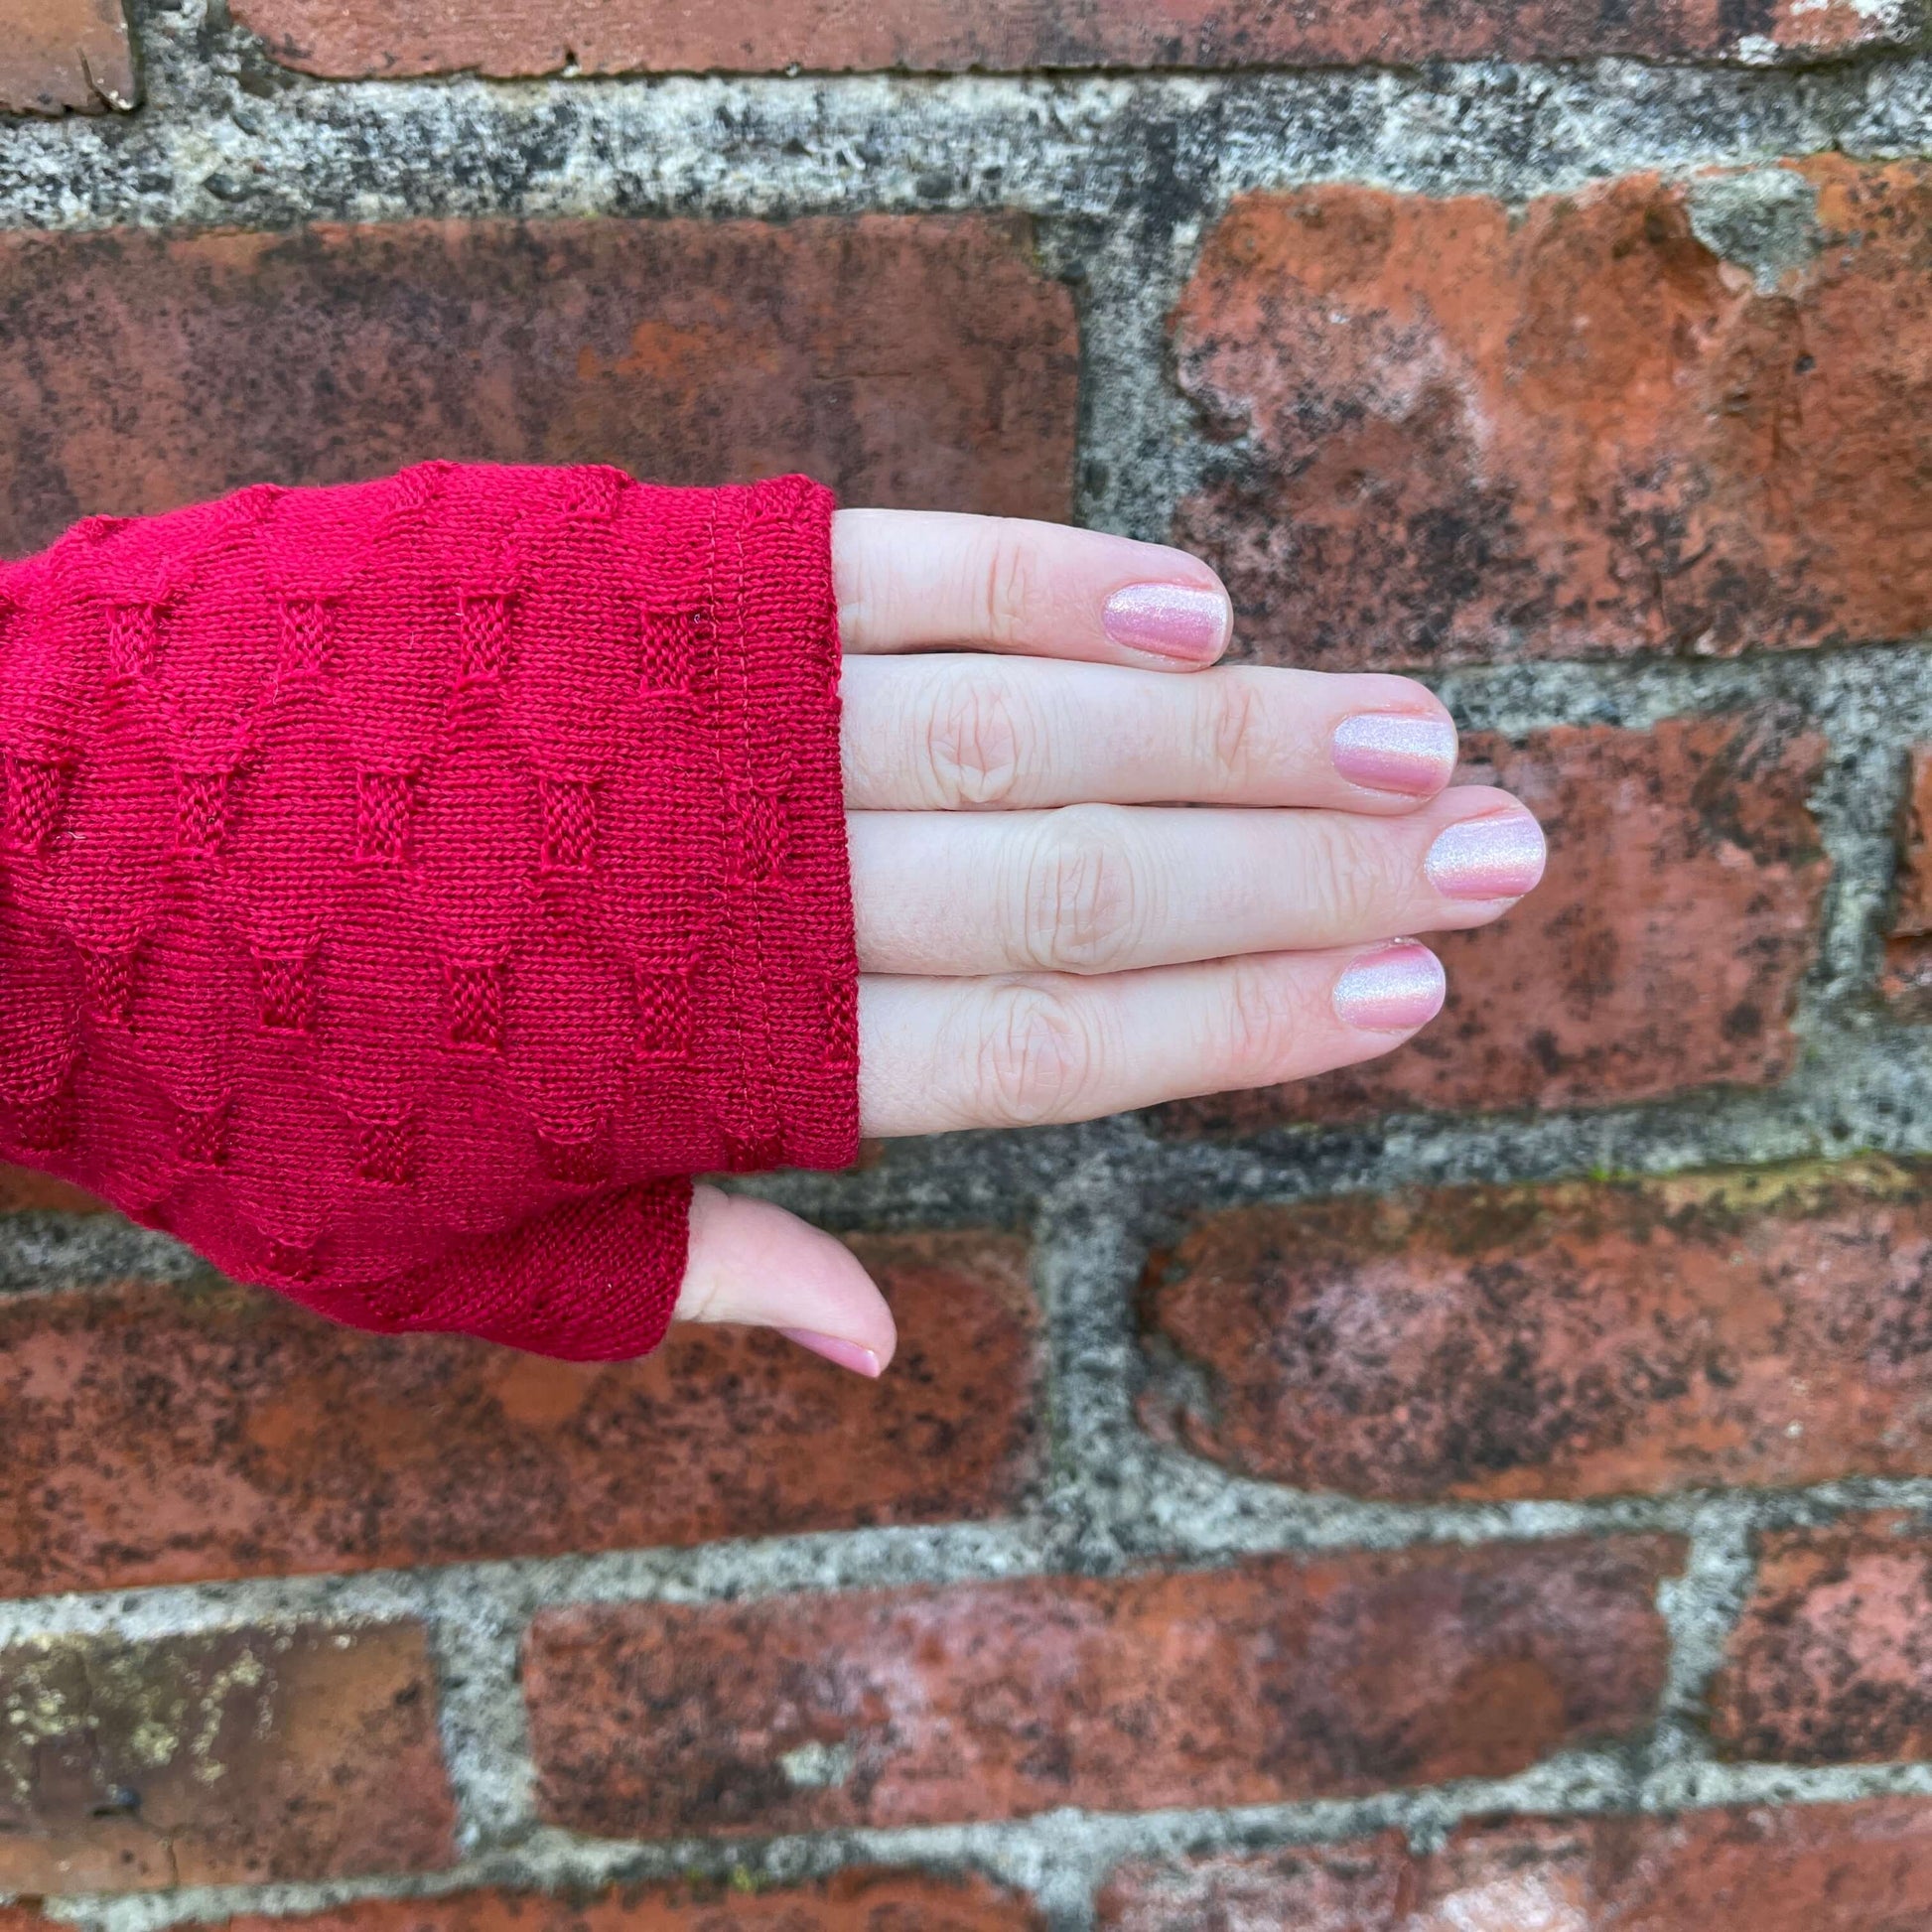 Fingerless merino gloves in red textured knit.